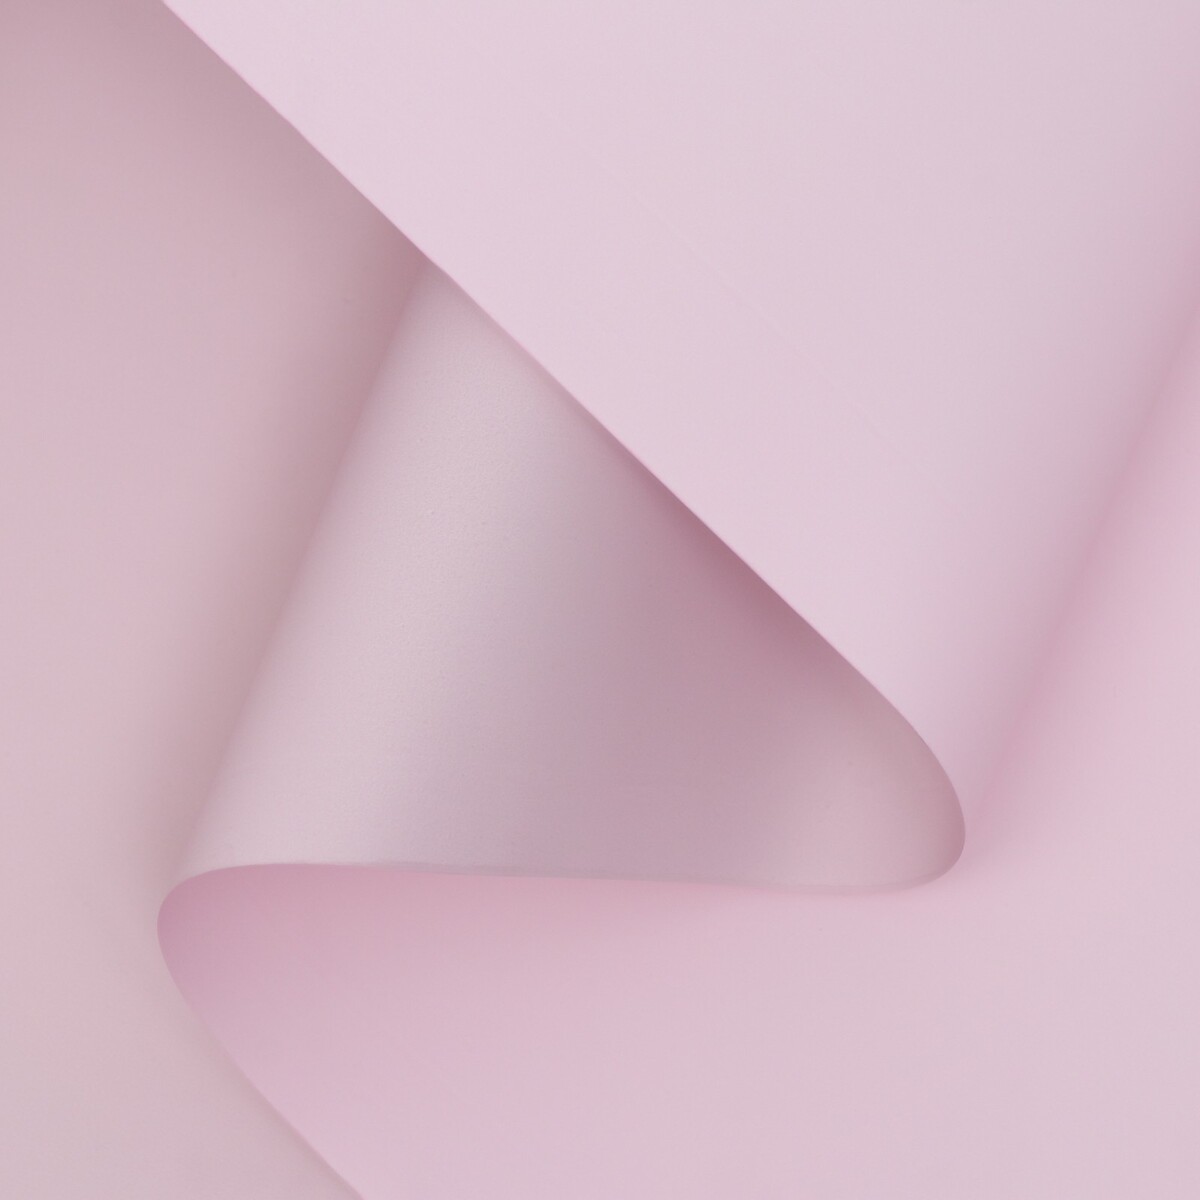 Пленка матовая двухсторонняя , пастельная серия, 65 мкм пастельный, розовый, 0,5 x 10 м пленка для ов тонированная матовая розовый с серым 0 5 х 10 м ±1 см 65 мкм